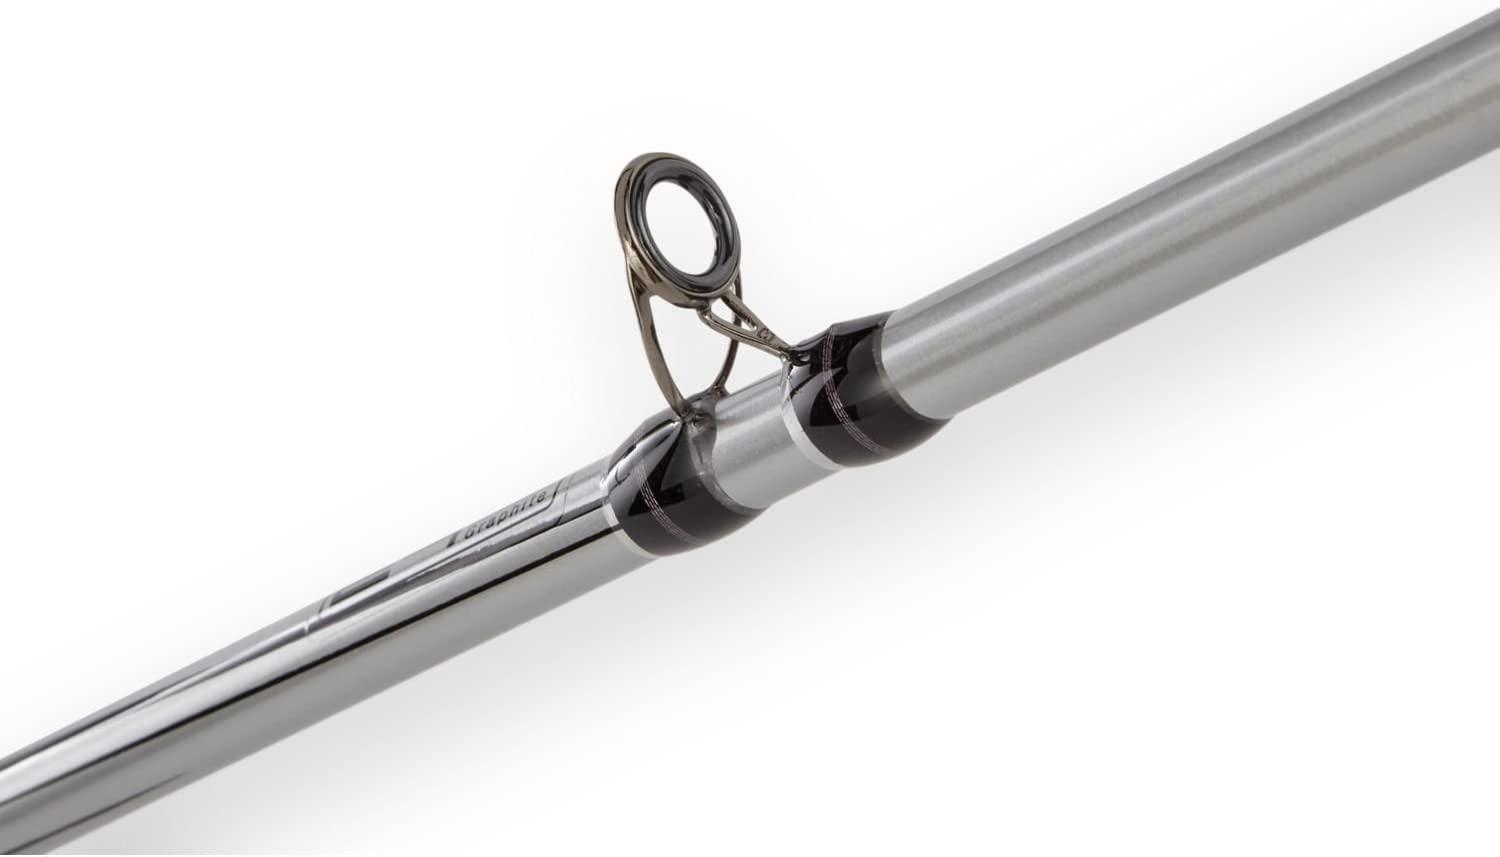 Melton Tackle Graphite/Glass Composite Marlin Live Bait Casting Rod - CSFB 5080RRT-66 - 6'6 - 50-80 lb.